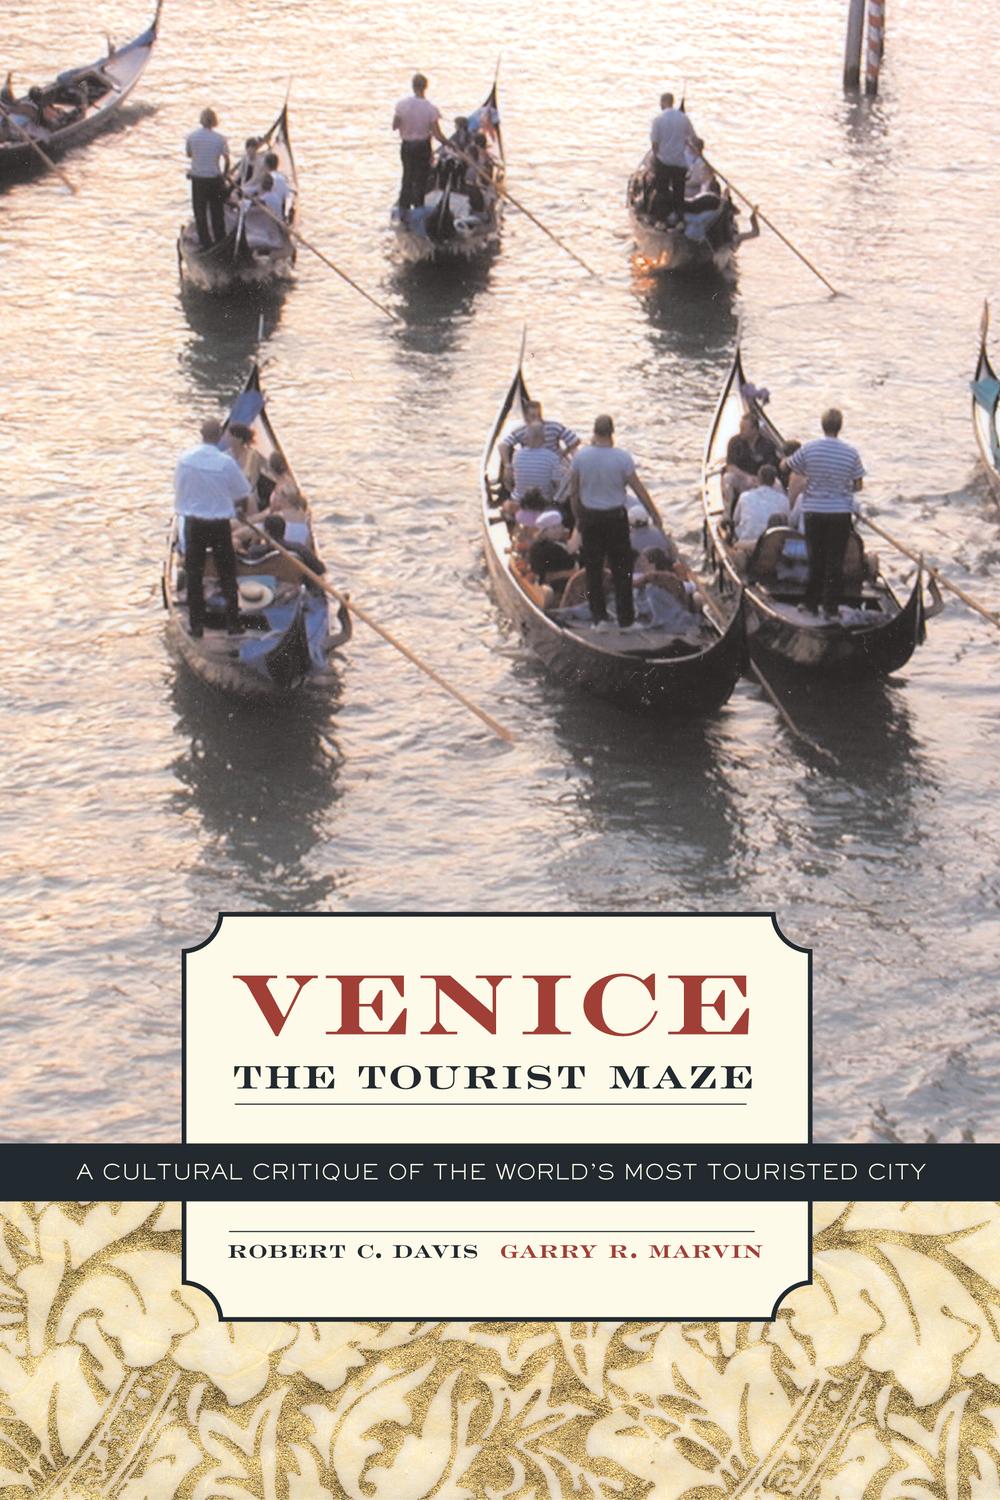 Venice, the Tourist Maze - Robert C. Davis, Garry R. Marvin